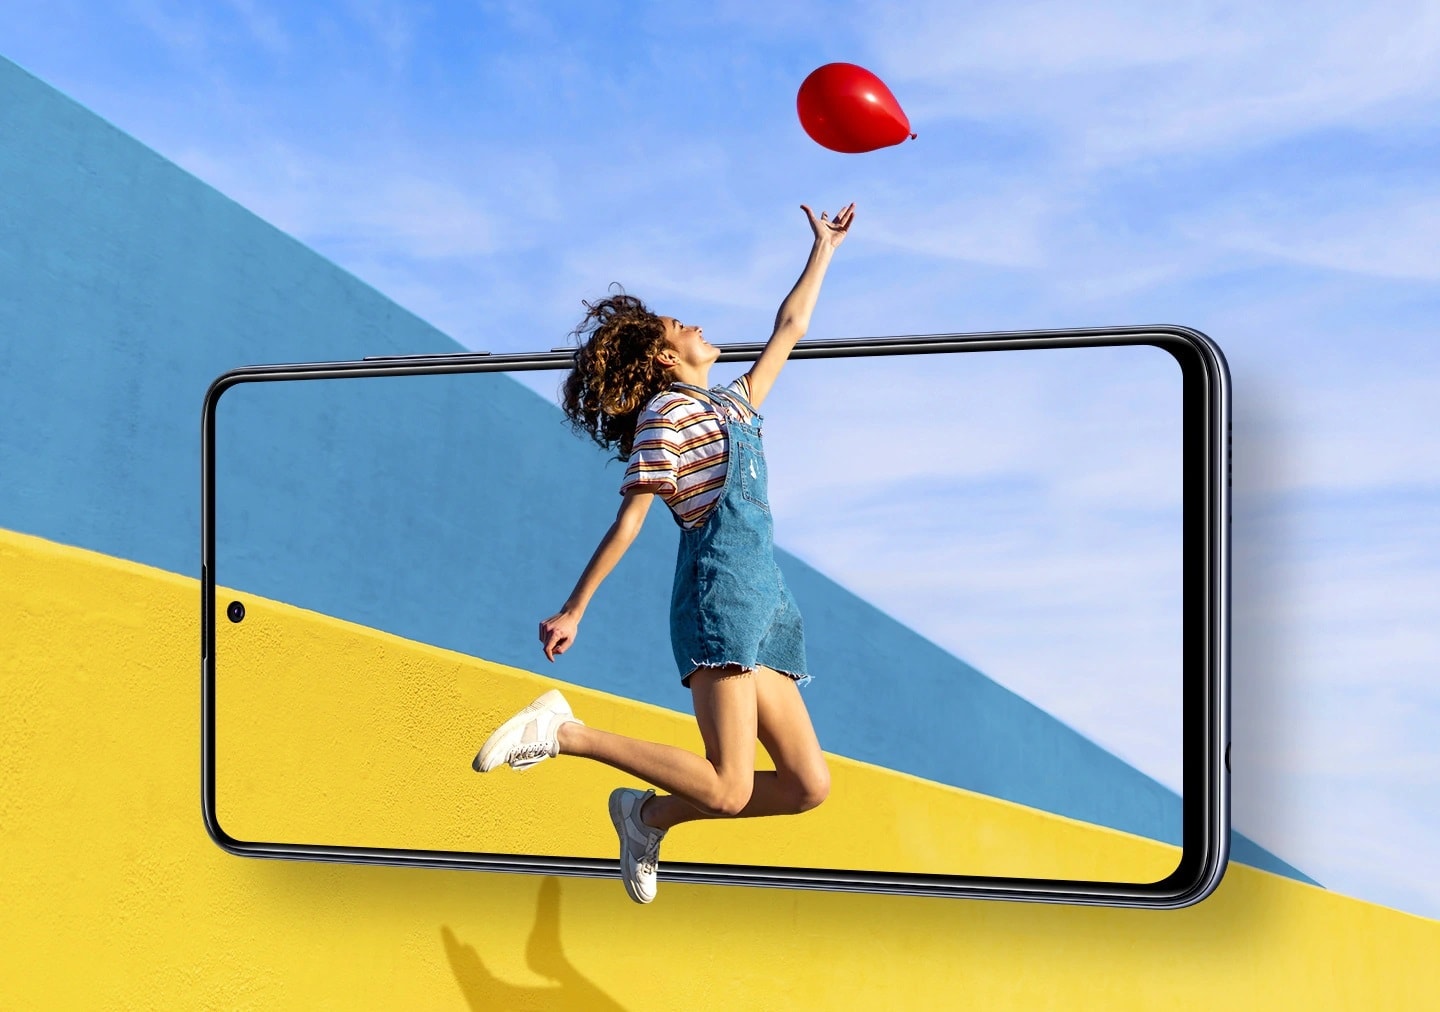 Nowy smartfon Samsung Galaxy A51 posiada 6.5 calowy wyświetlacz Infinity-O o rozdzielczości 2400-1080 pikseli, co zapewnia niemal nieograniczony widok i maksymalne doznania z oglądania